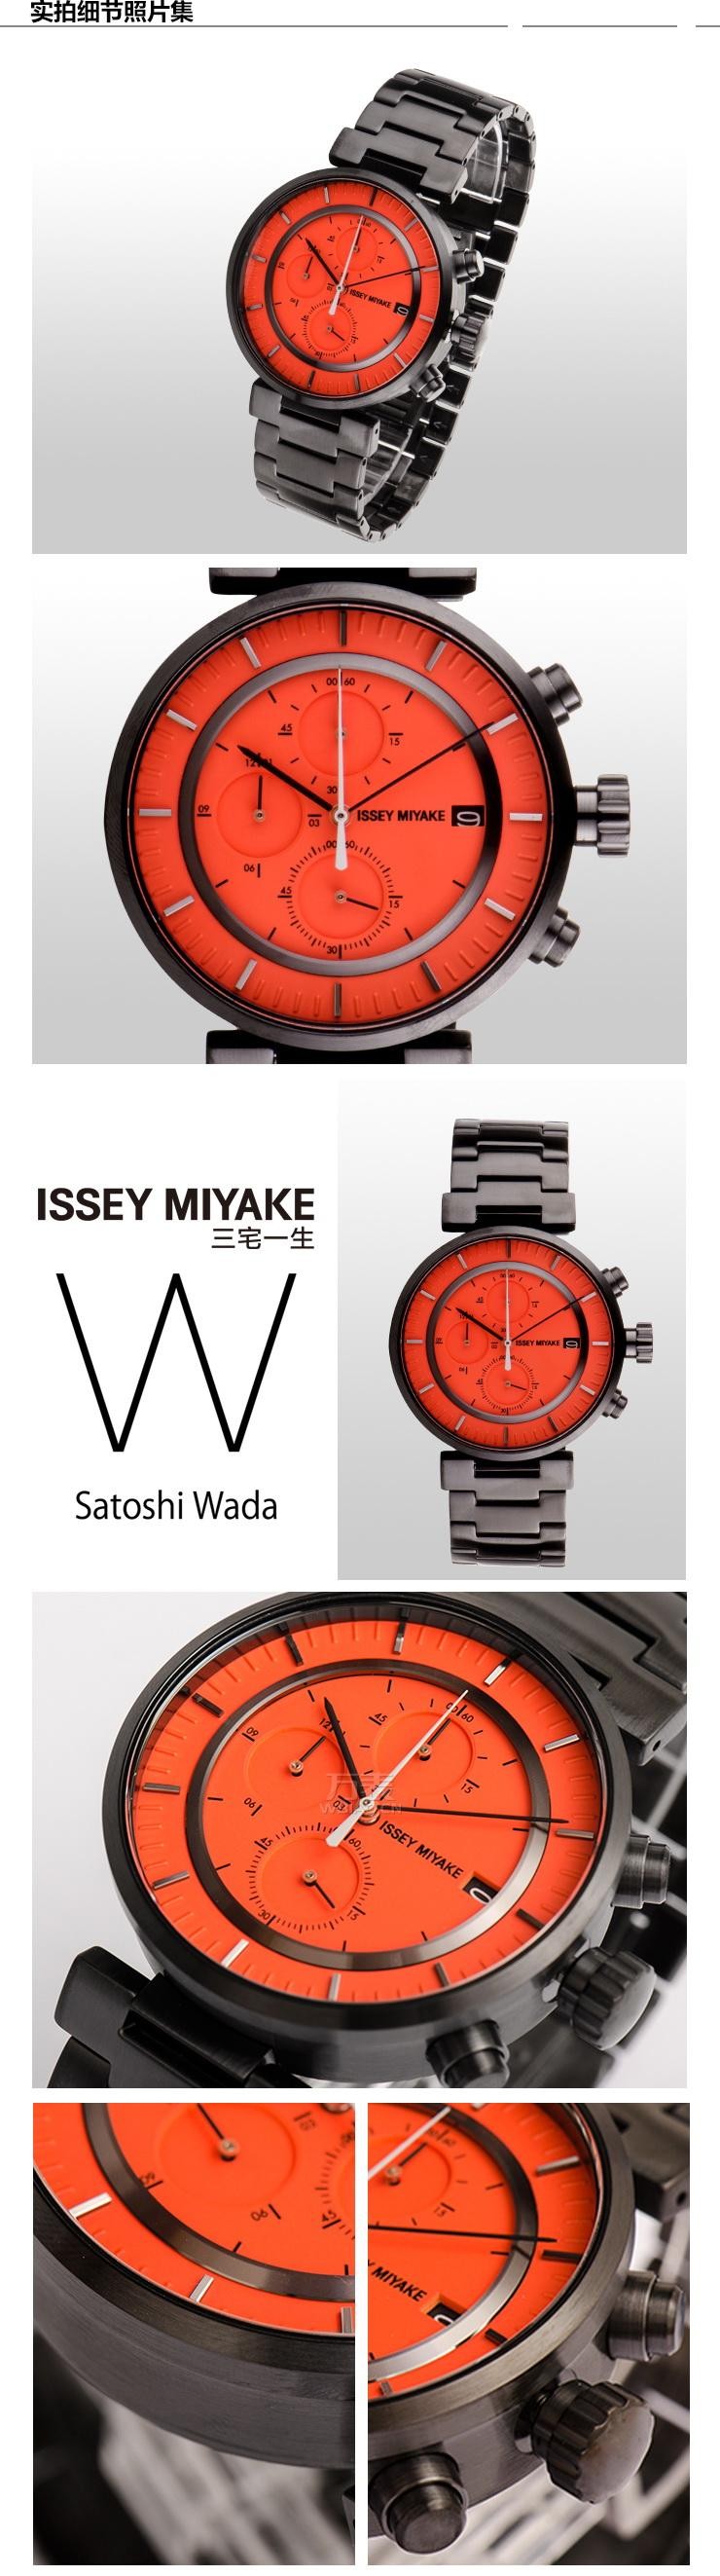 三宅一生ISSEY MIYAKE-W系列 SILAY005 石英机芯腕表